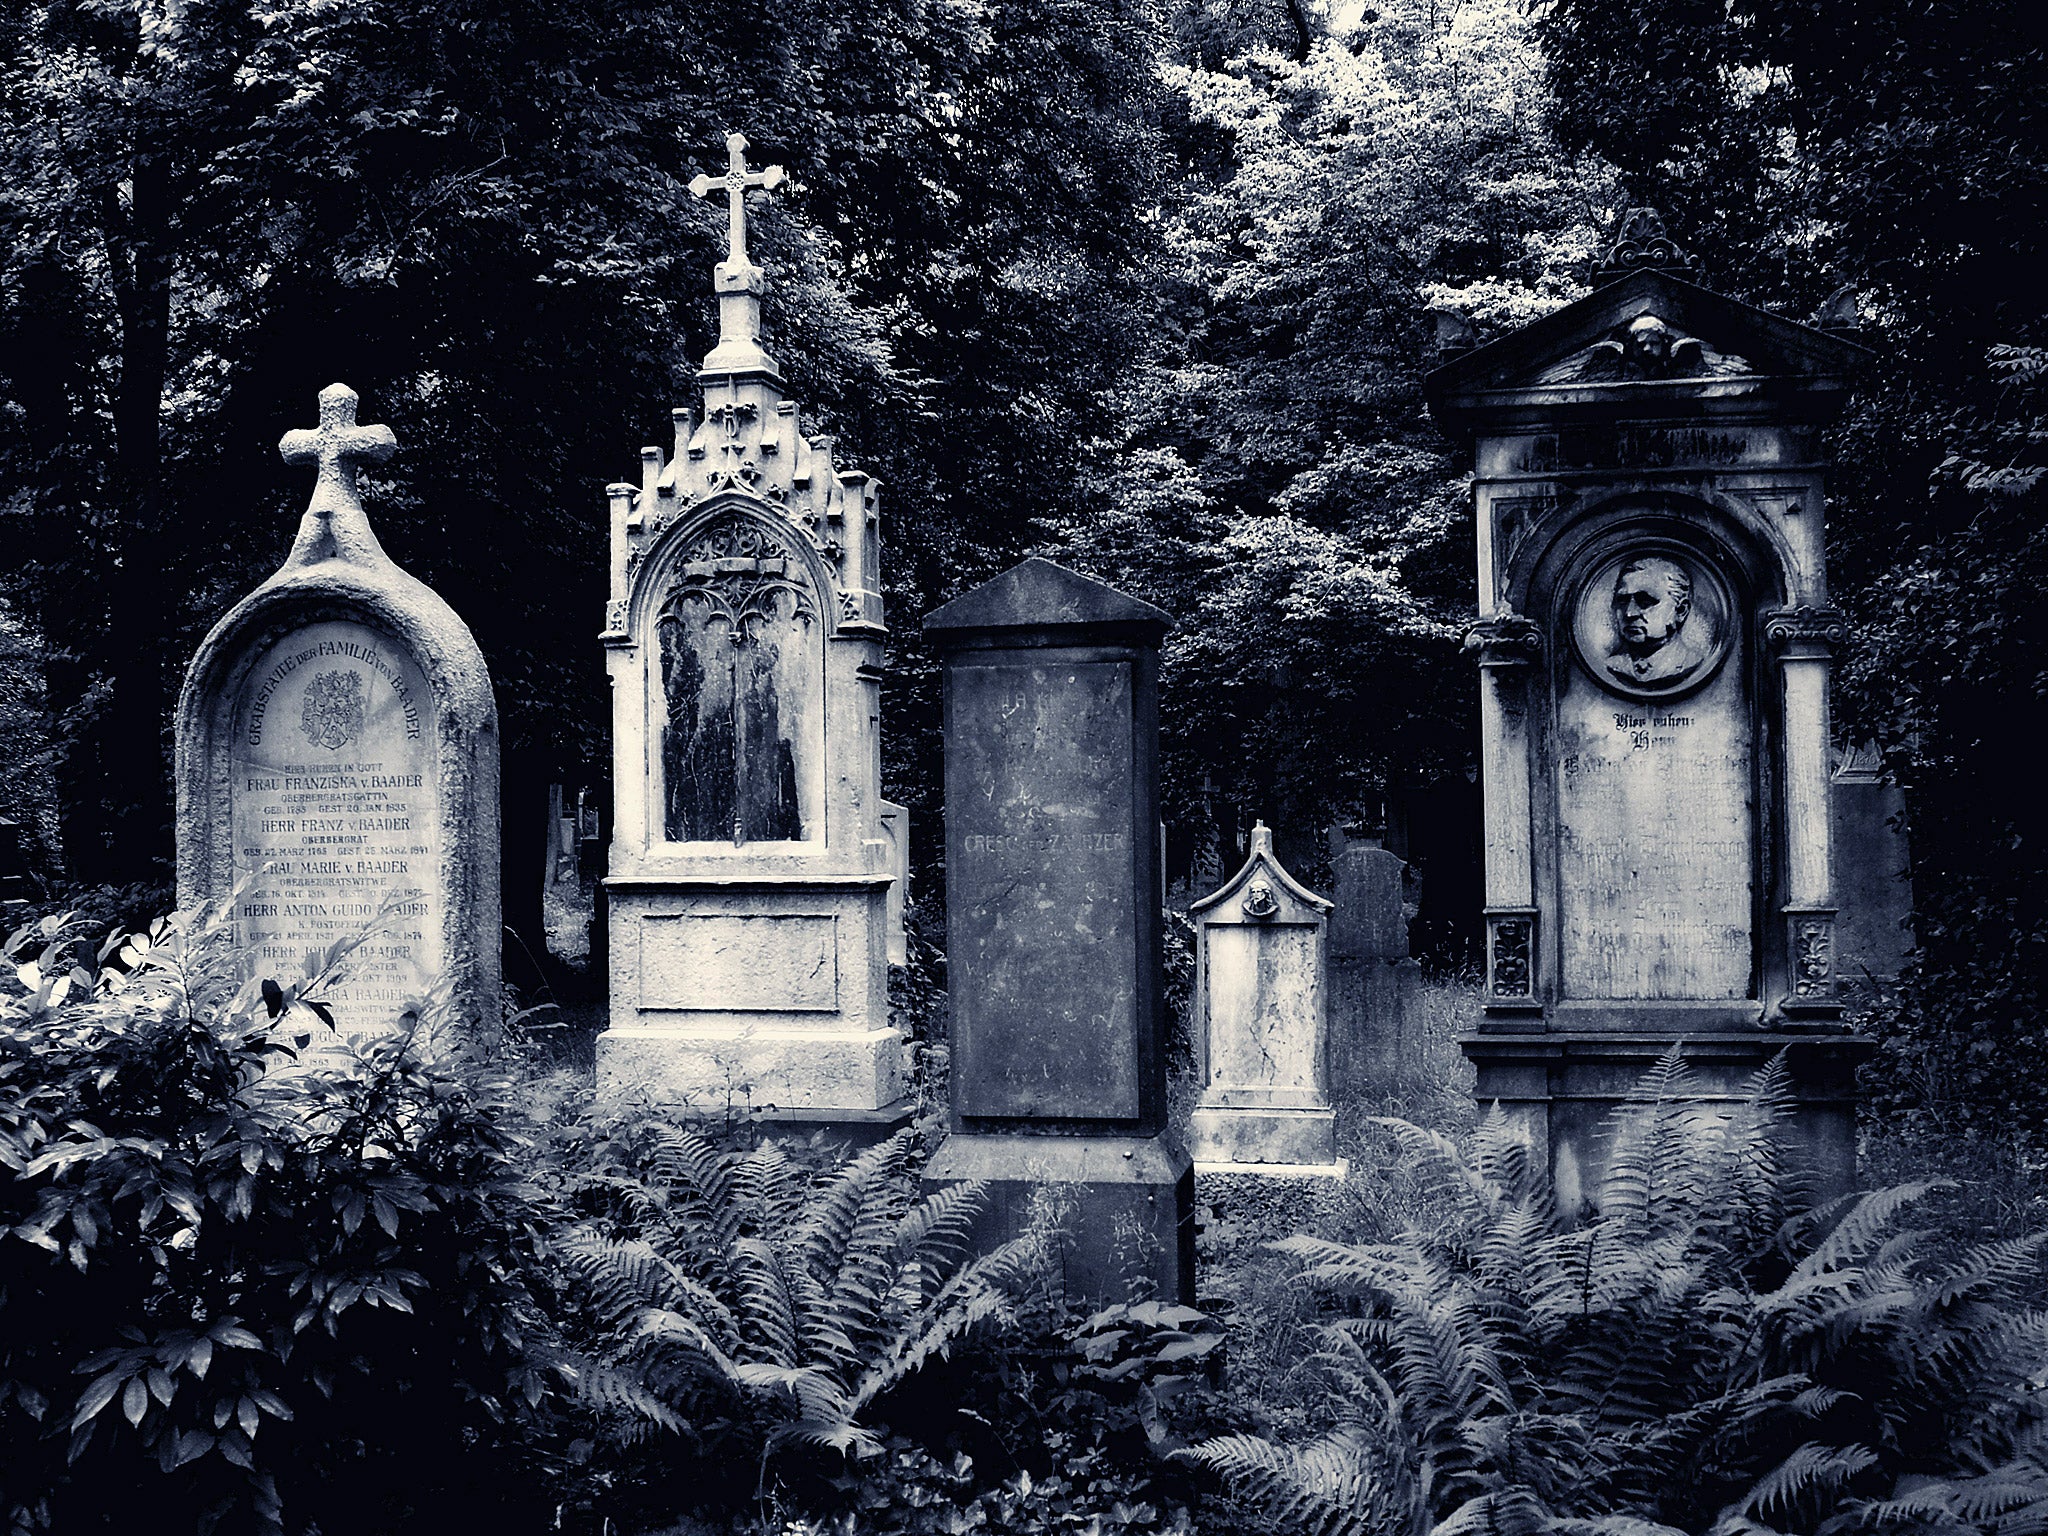 Eerie graveyard